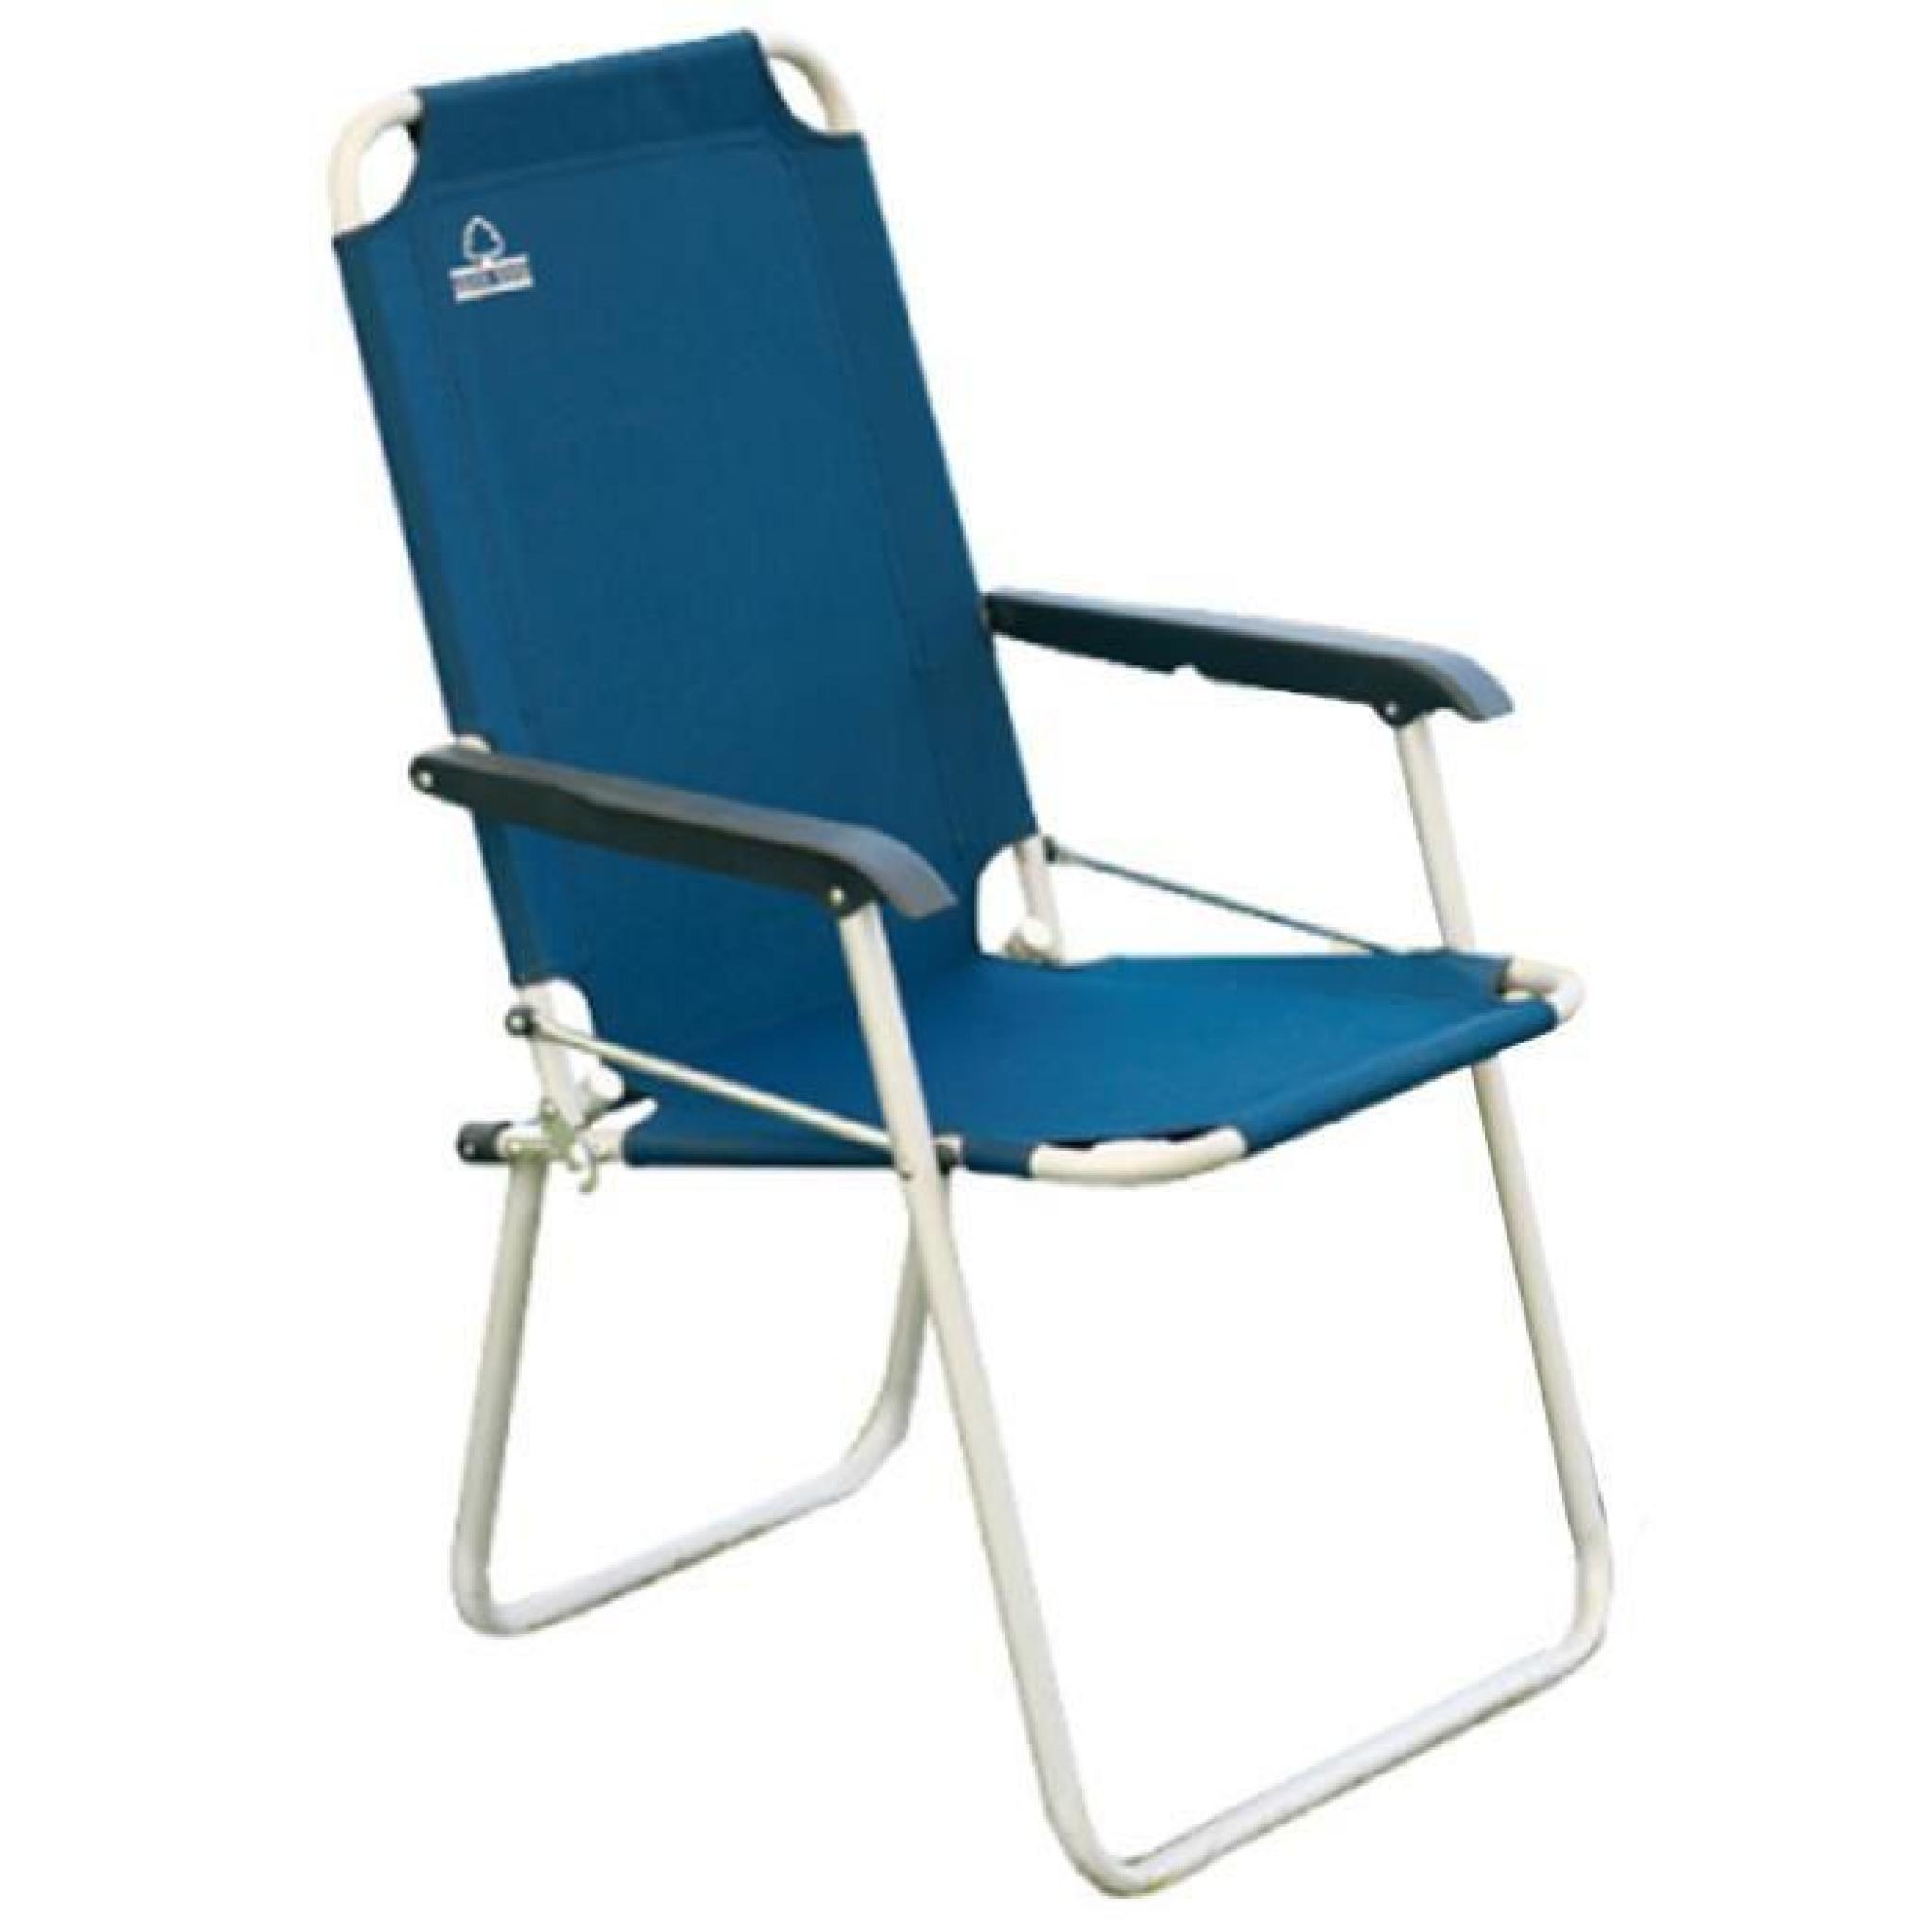 Moia Relaxation Chaise En Aluminium Poliestereblu - Meubles De Jardin